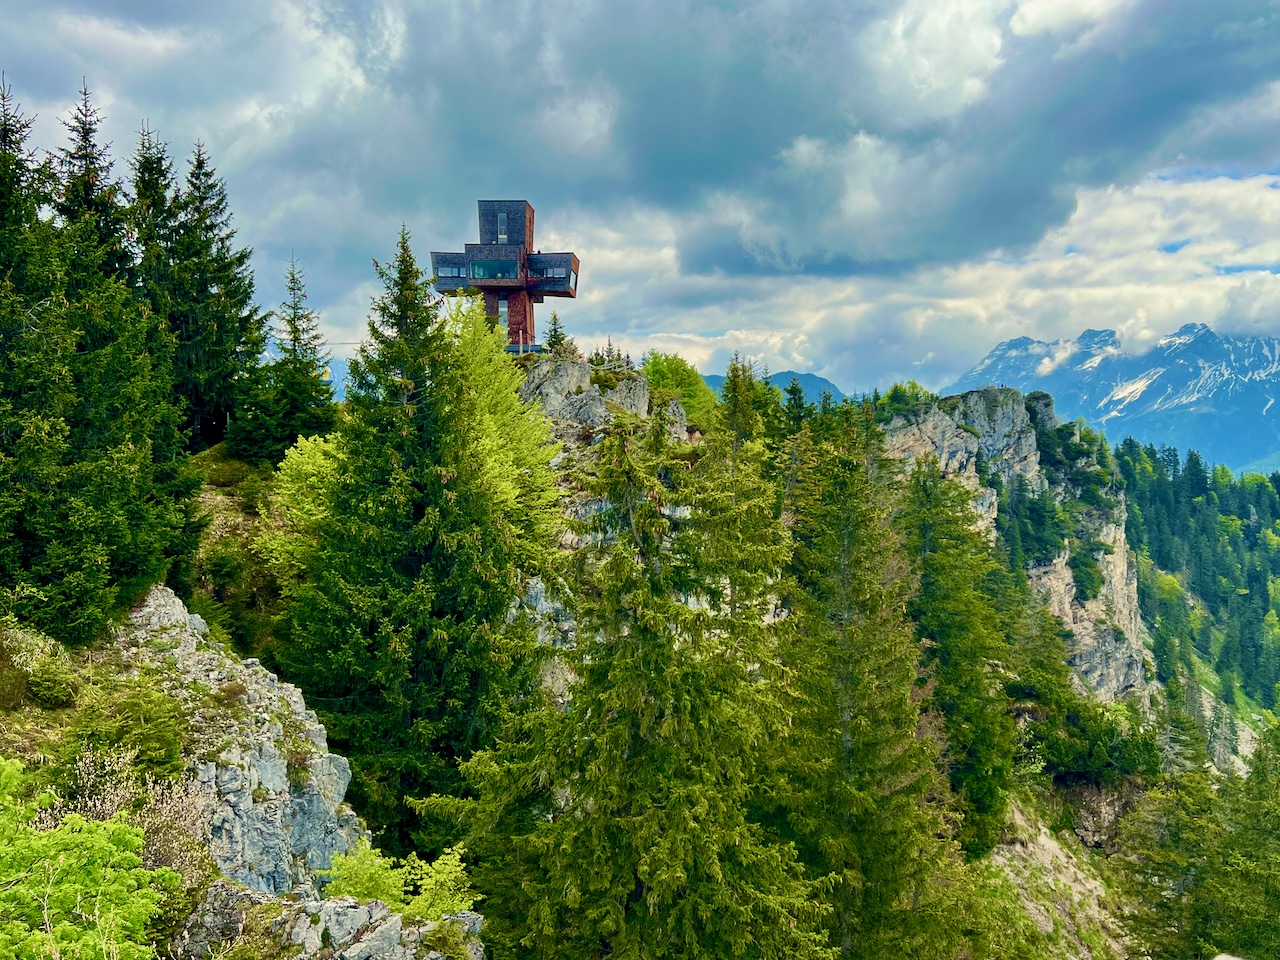 Impresionante: el Jakobskreuz en Buchensteinwand es la cruz de cumbre accesible más alta del mundo. Travel Report Fieberbrunn Pillerseetal experiencias consejos lugares de interés actividades